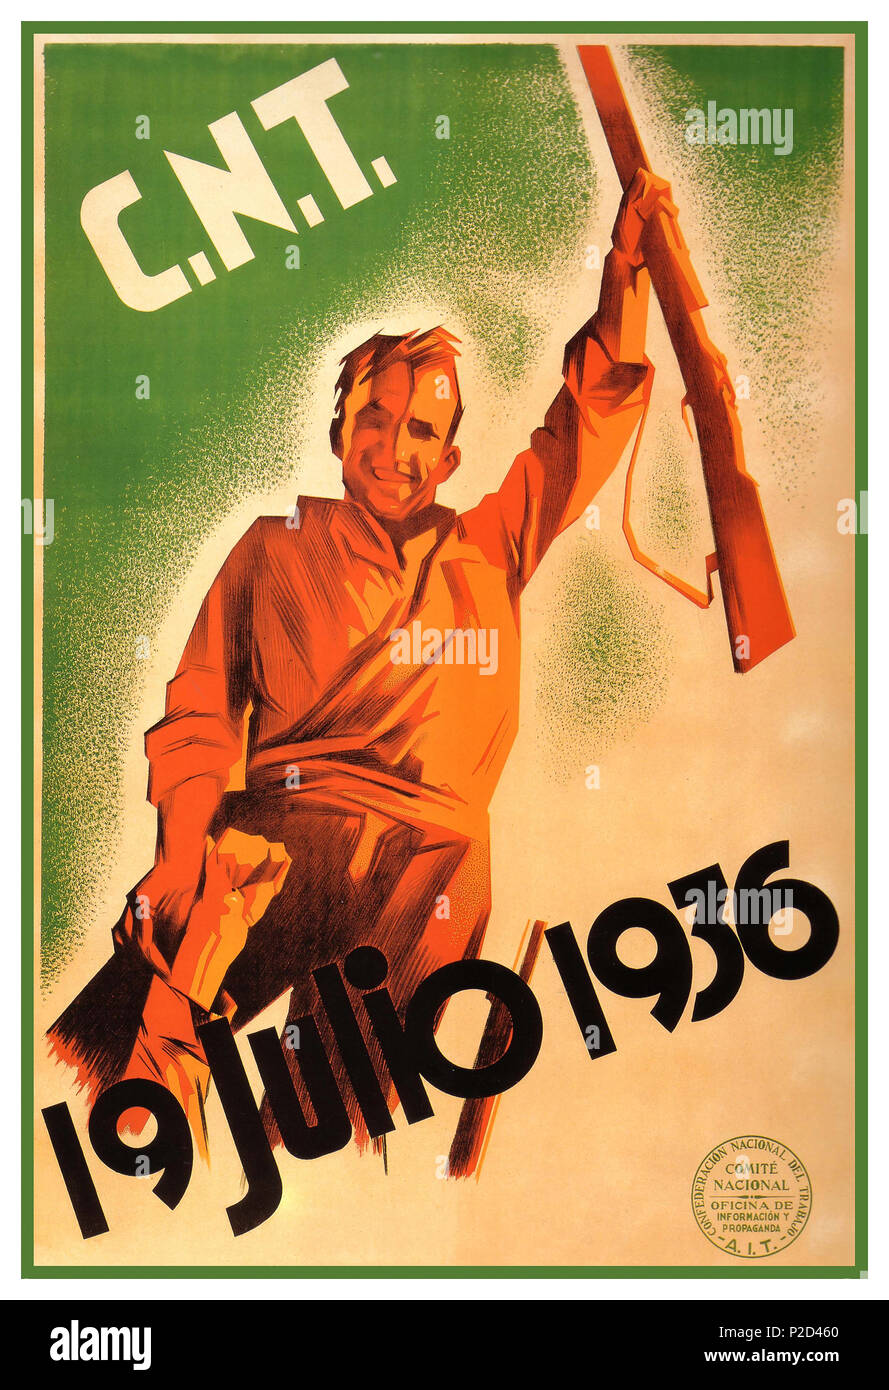 Vintage 1930's CNT espagnole le 19 juillet de l'affiche de propagande, 1936 marque le 79e anniversaire du début de la révolution espagnole, lorsque les anarchistes à travers l'Espagne a pris les armes contre le réactionnaire Espagnol Les forces militaires qui ont essayé d'amener sur l'Espagne. Il s'ensuivit une guerre civile sanglante et l'ultime défaite des anarchistes espagnols trois ans plus tard, à la suite d'un embargo sur les armes, la traîtrise communiste et d'une machine militaire fasciste alimentée par des armes et l'expertise militaire de l'Allemagne nazie et l'Italie fasciste. Confederación Nacional del Trabajo CNT Espagne Banque D'Images